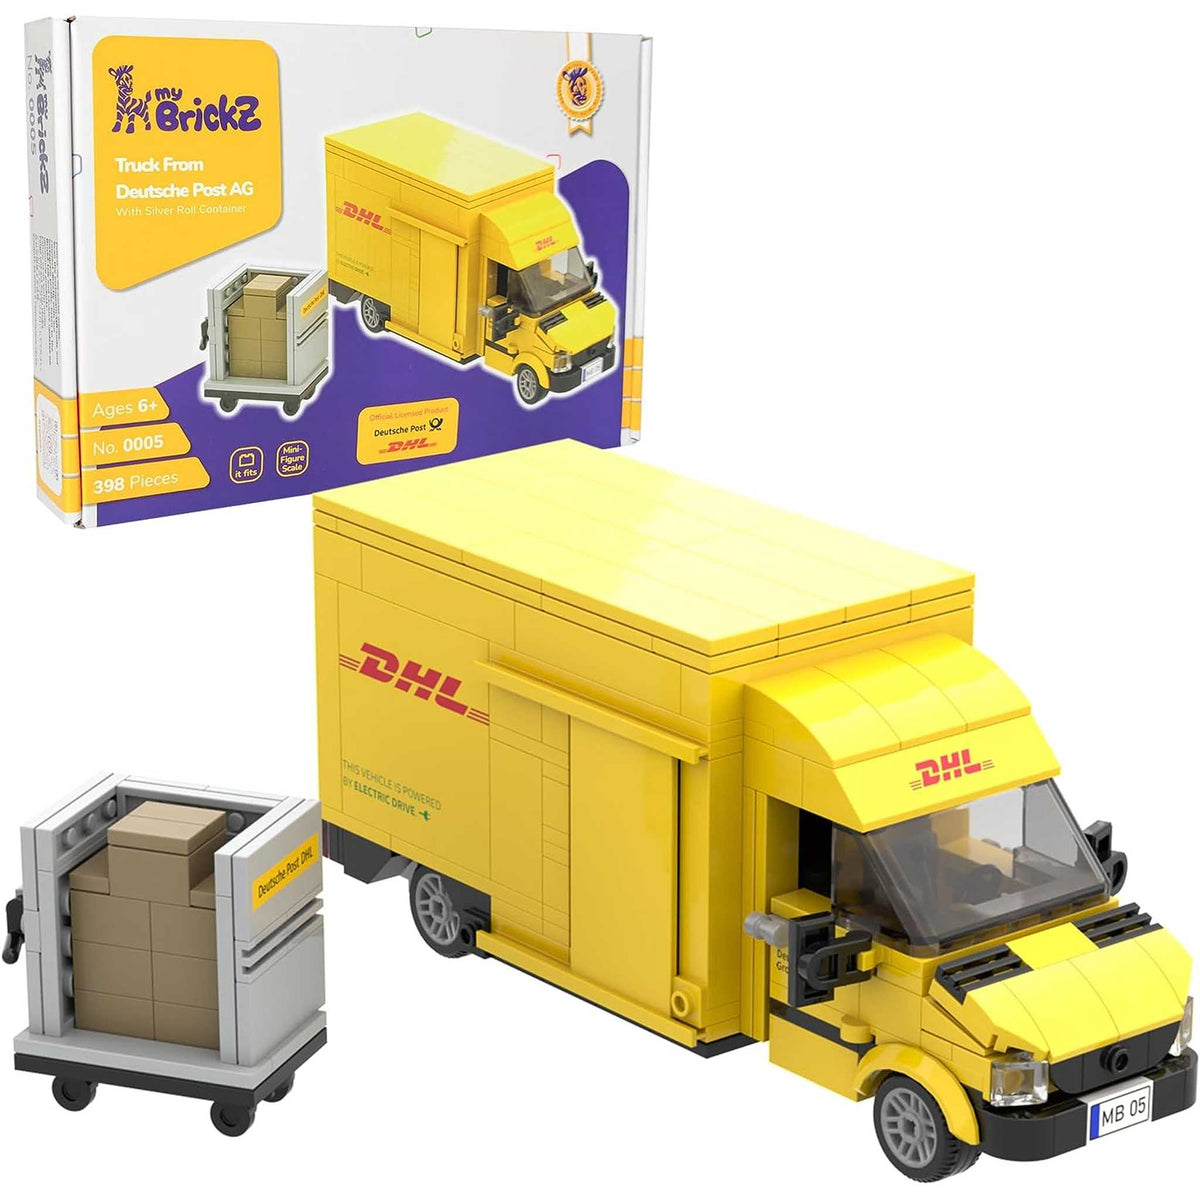 0005 - DHL Truck mit Rollcontainer (myBrickZ)